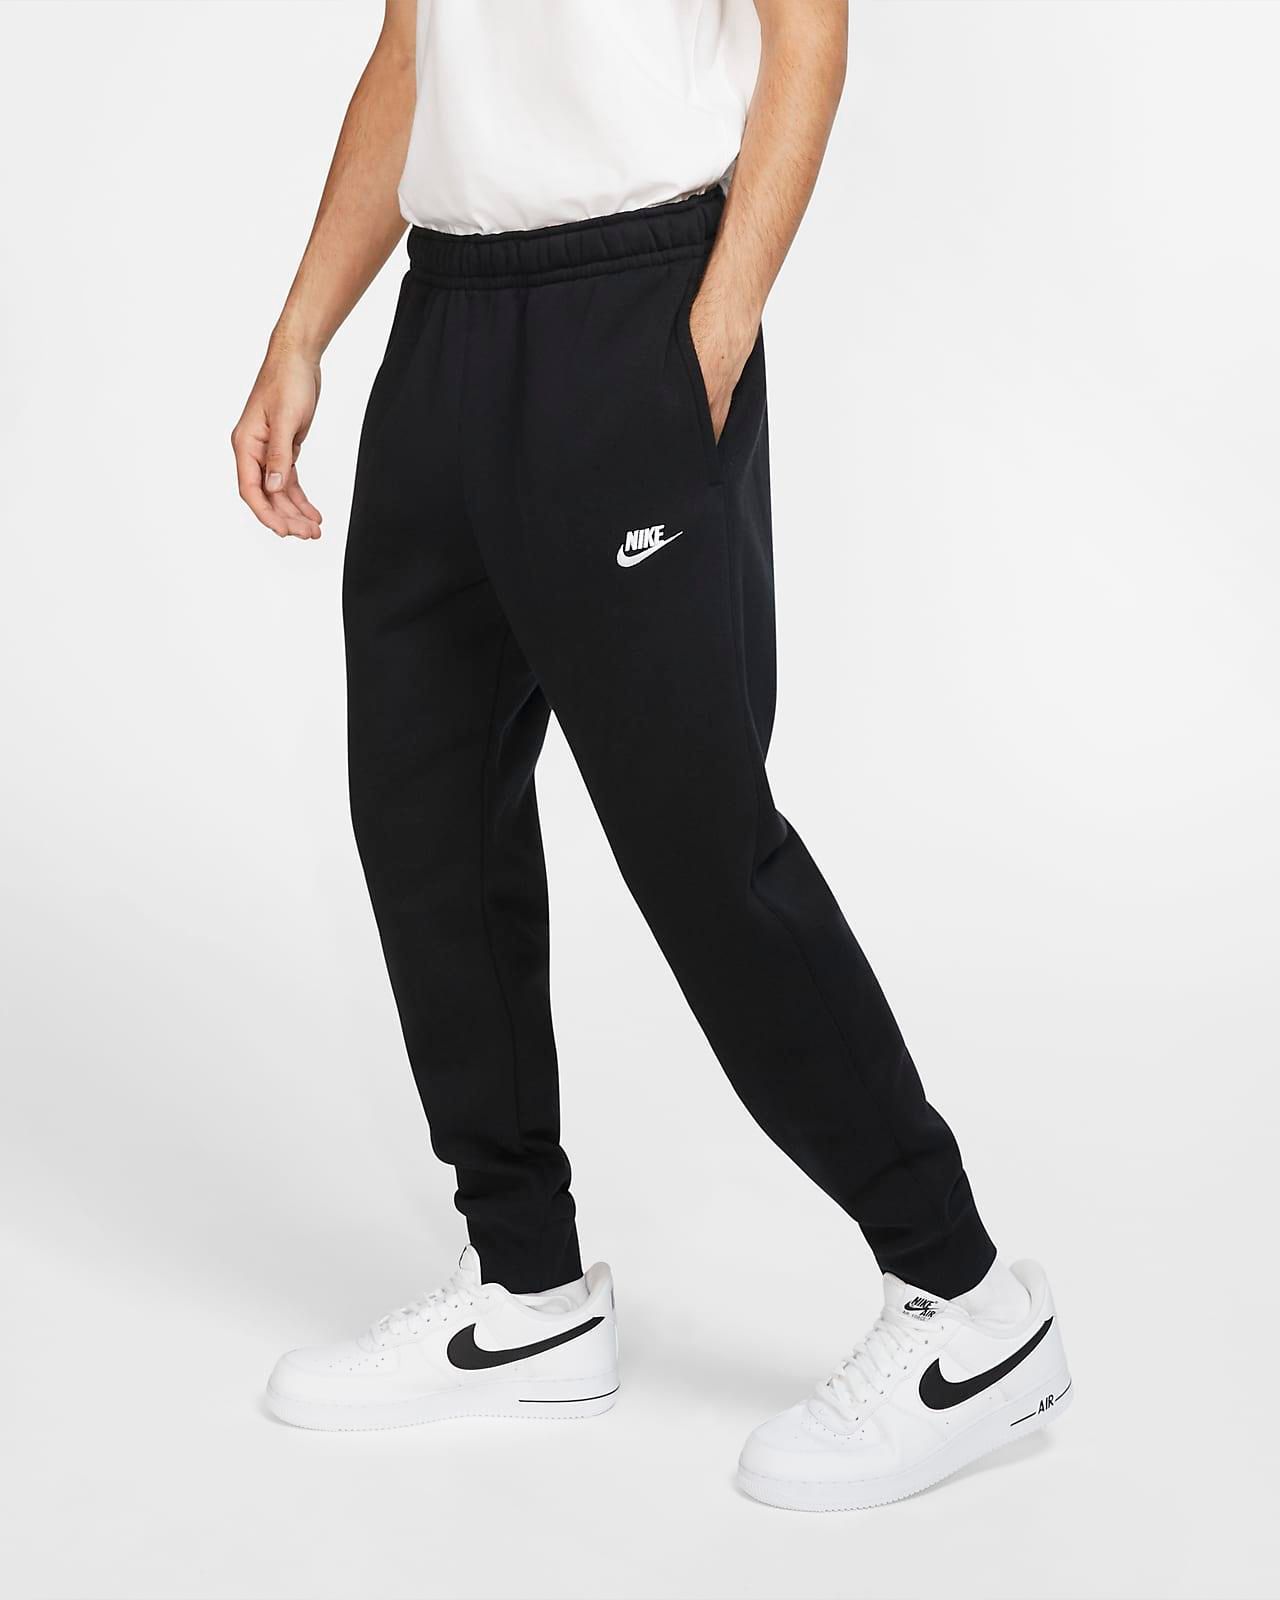  BV2671 010 - Nike Sportswear Club Fleece Joggers 